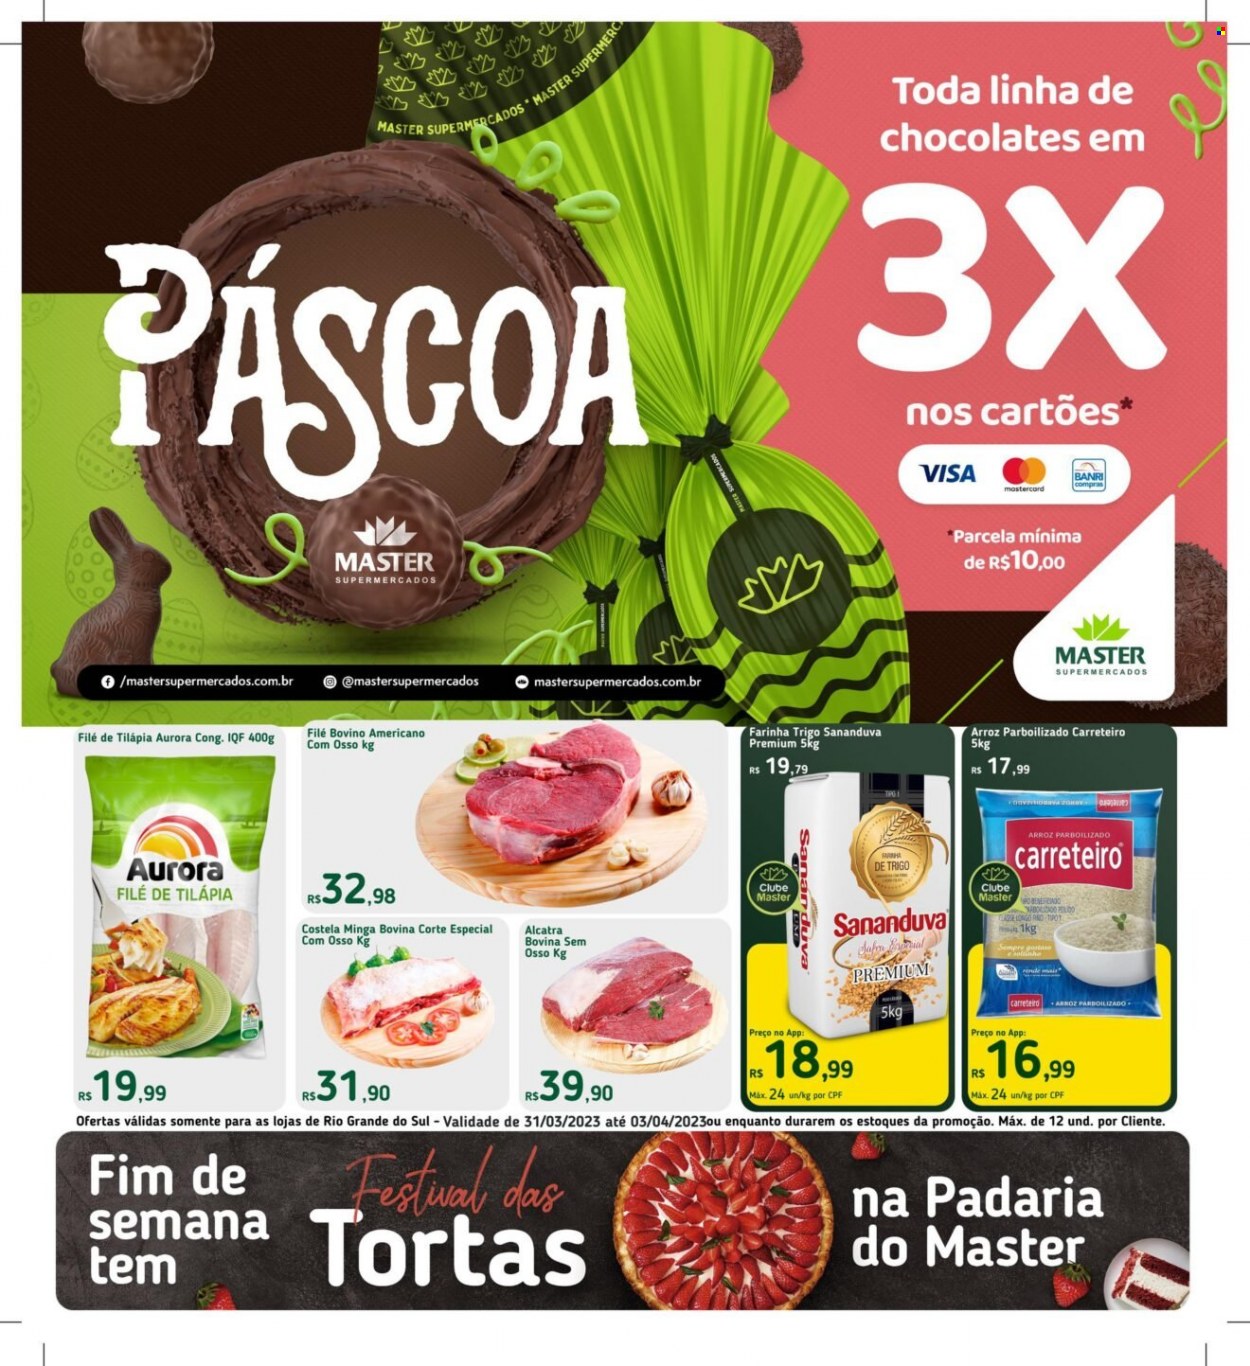 Encarte Master Supermercados  - 31.03.2023 - 03.04.2023.